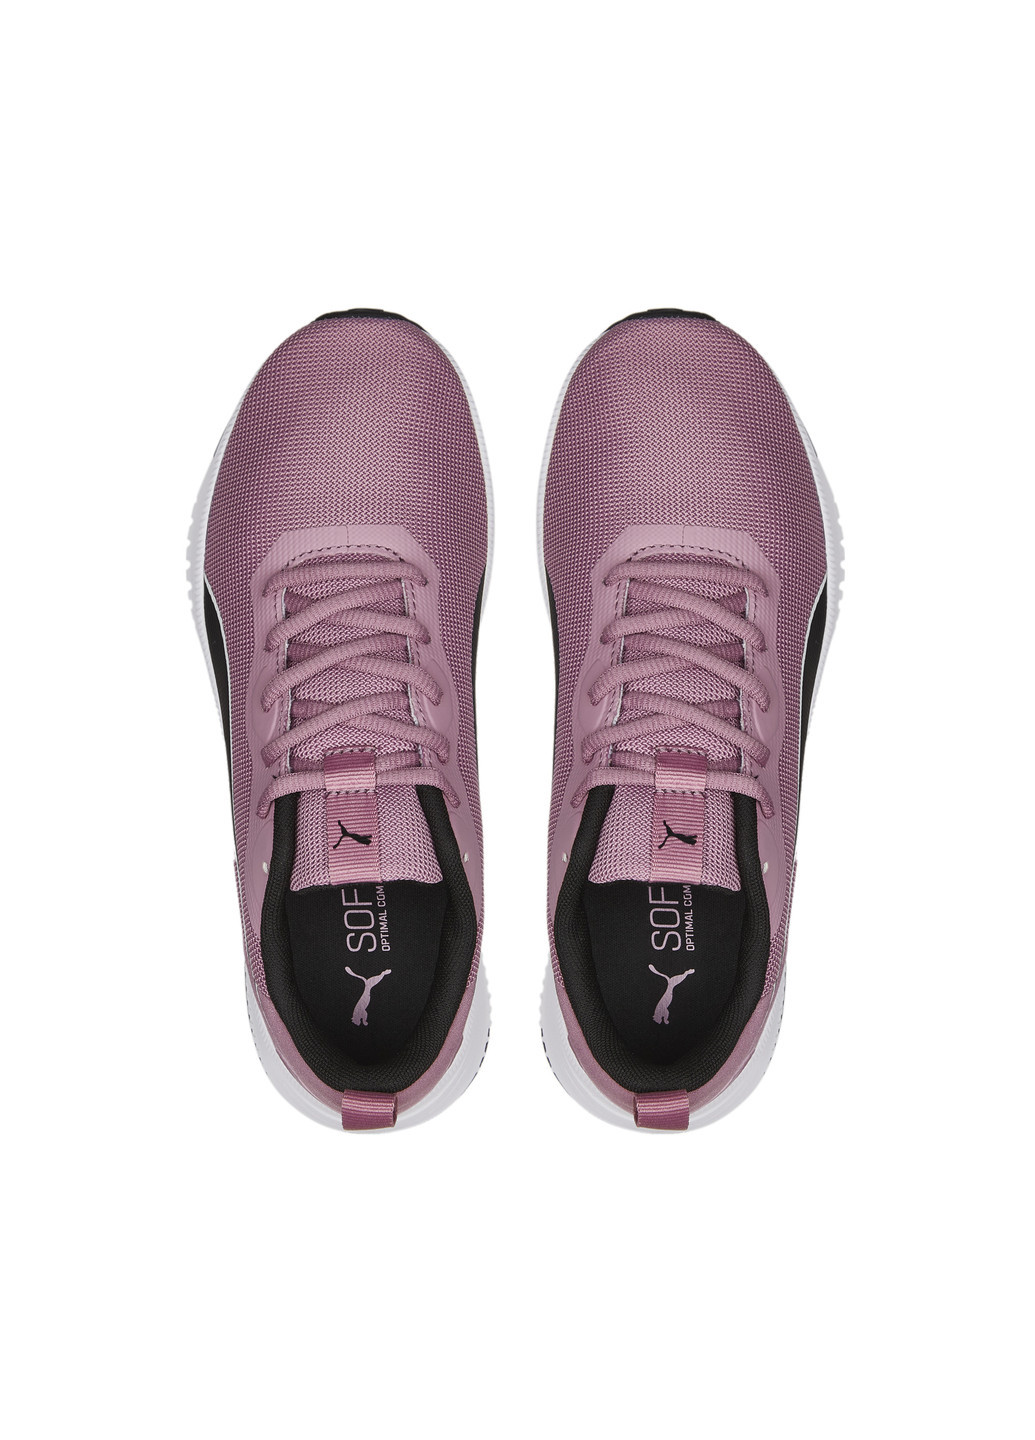 Пурпурные всесезонные кроссовки flyer flex running shoes Puma